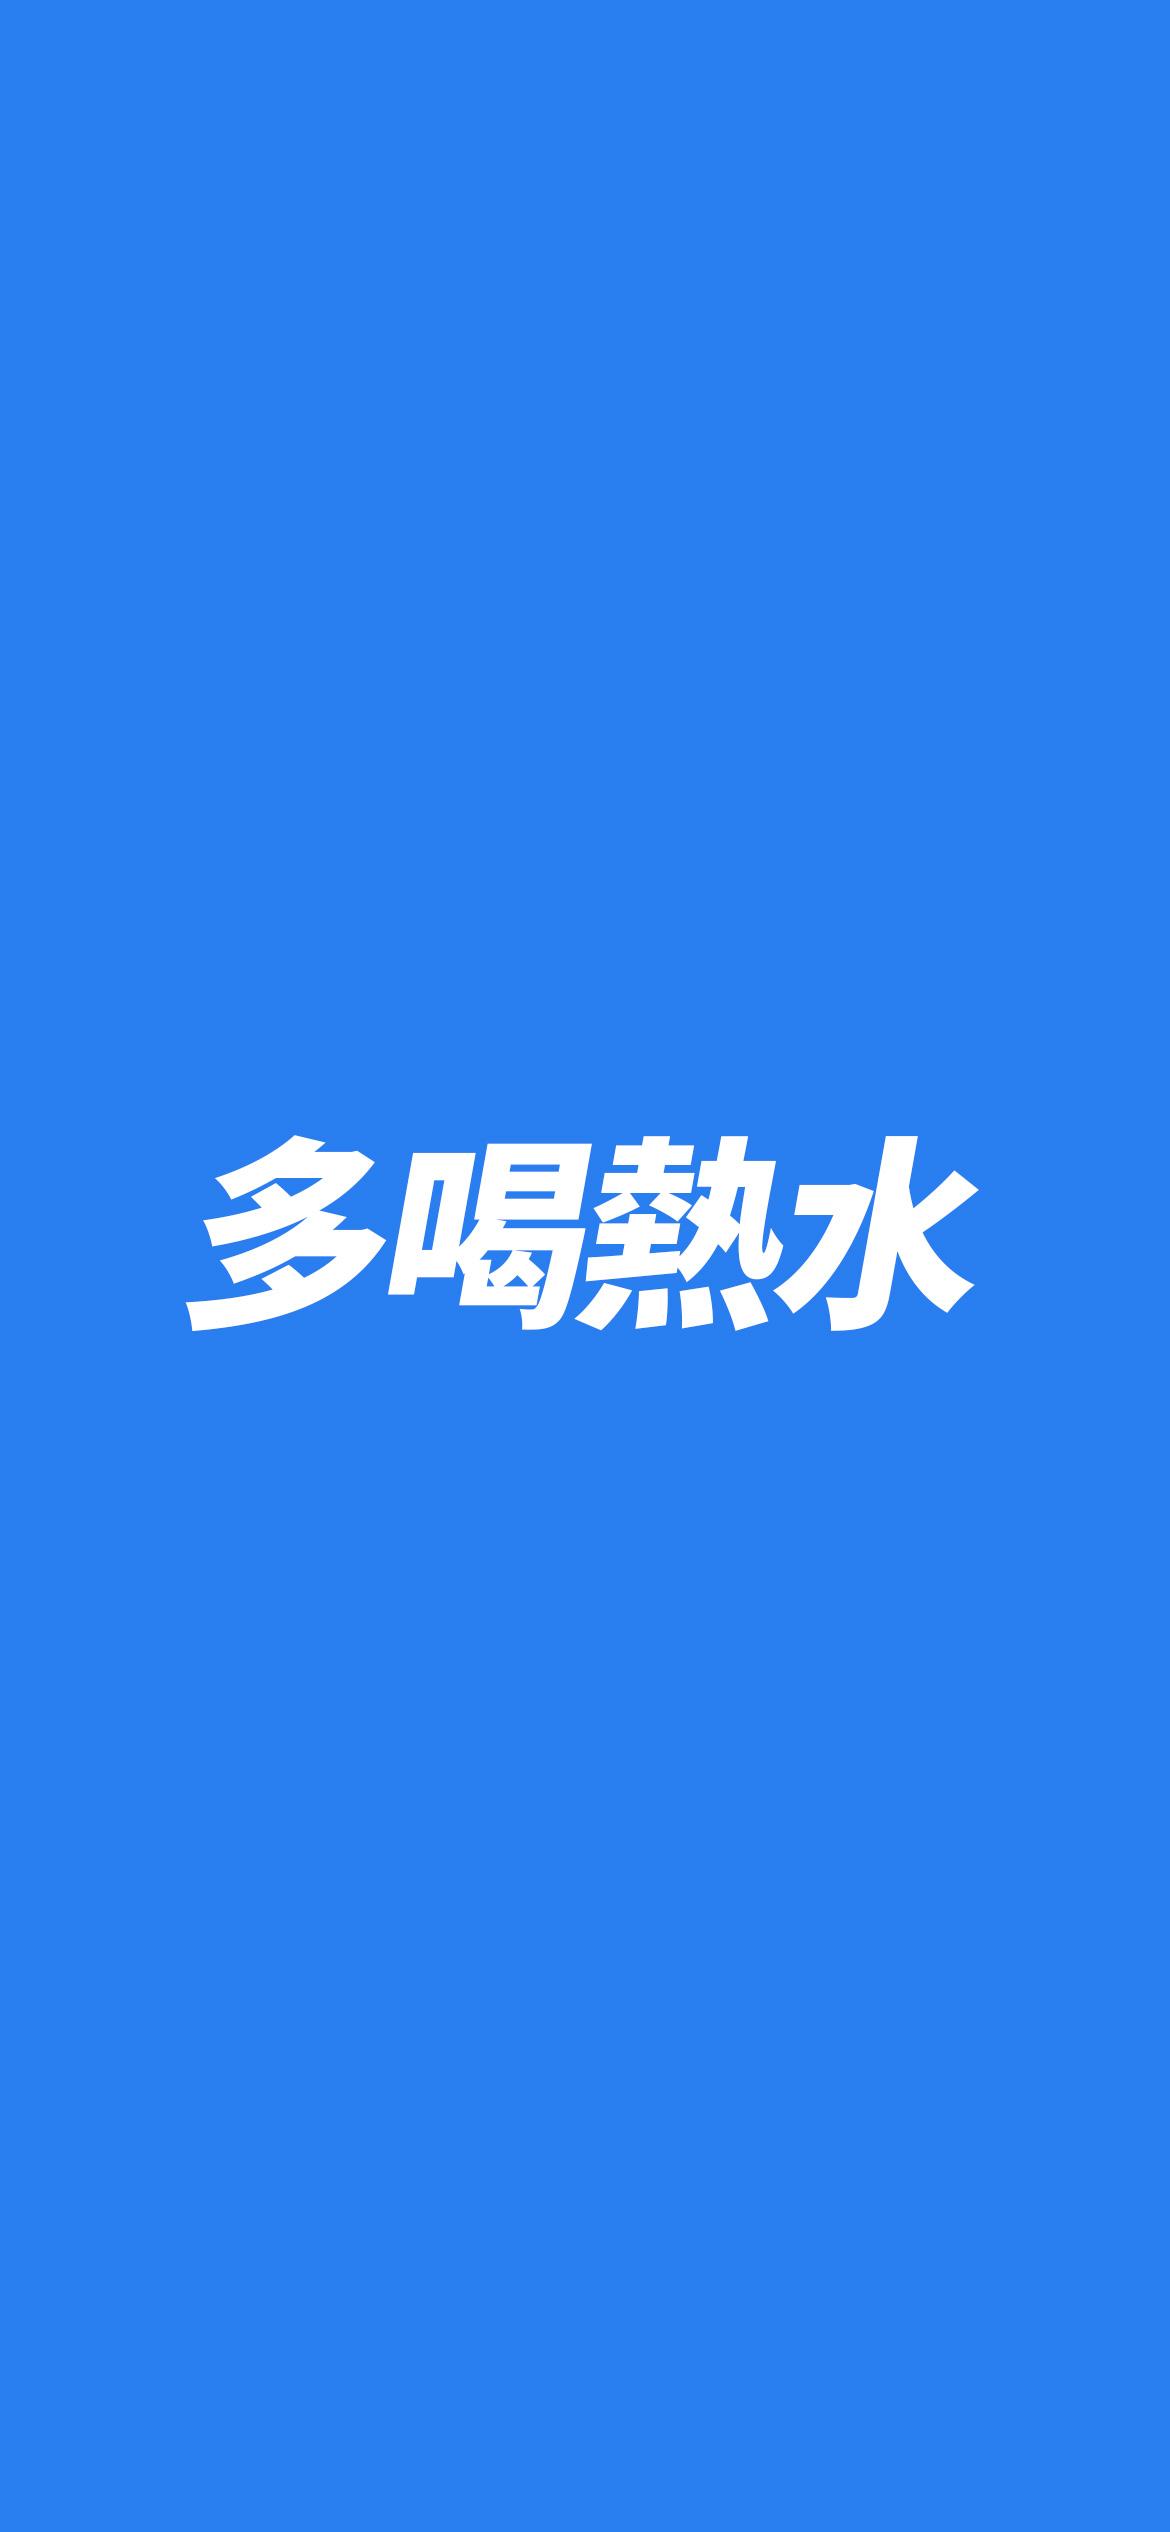 中国风霸气文字设计-开战图片_艺术字_设计元素_图行天下图库